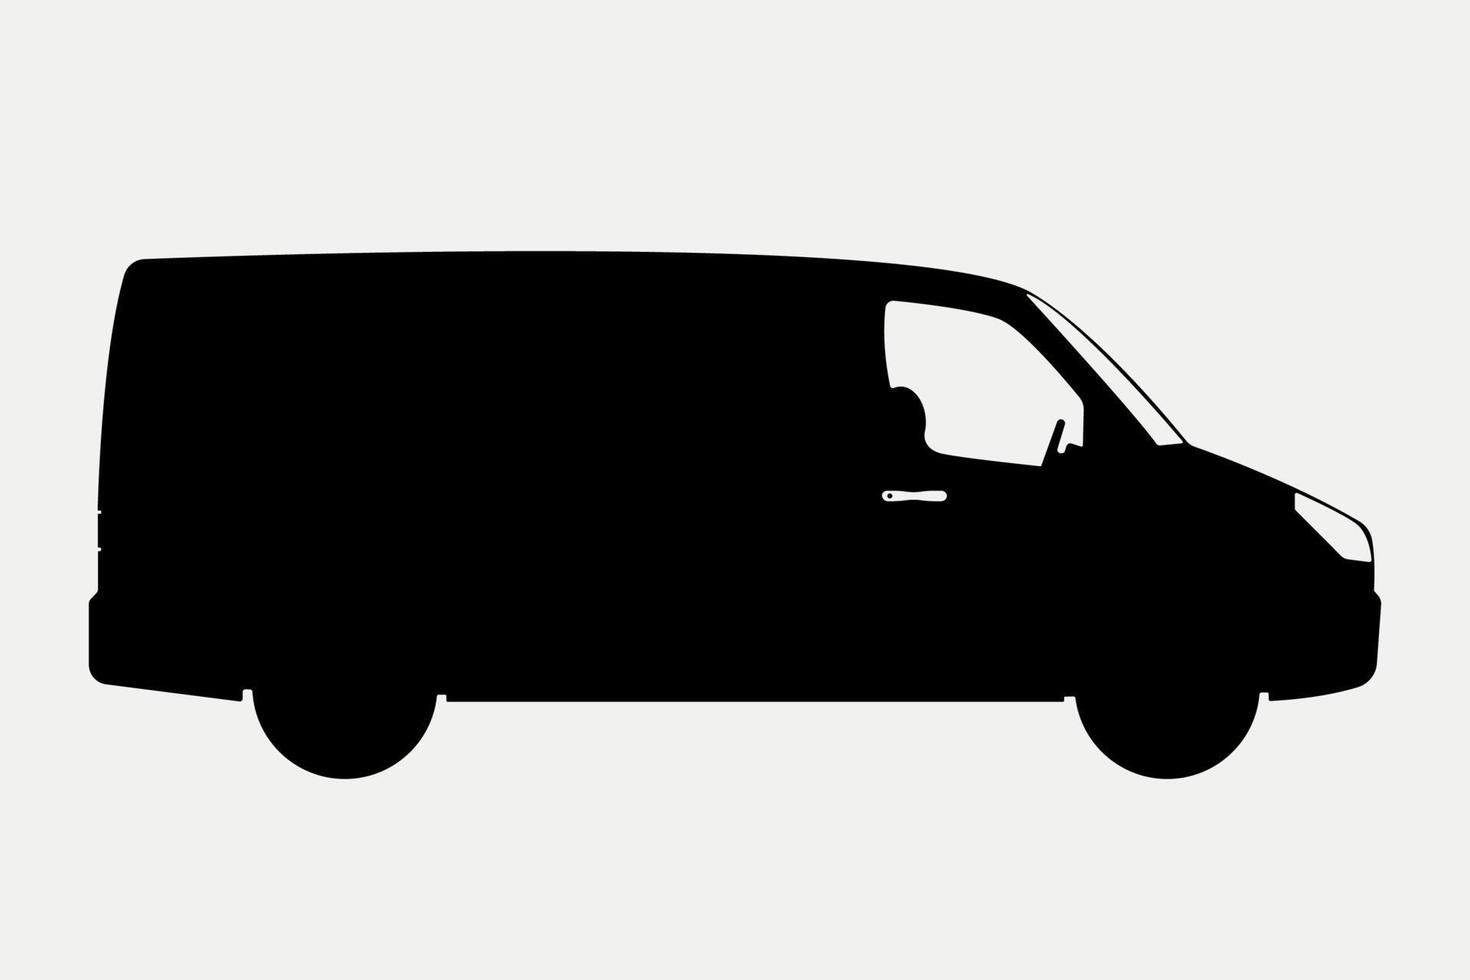 Minivan Transportation Vehicle Silhouette Illustration. vector